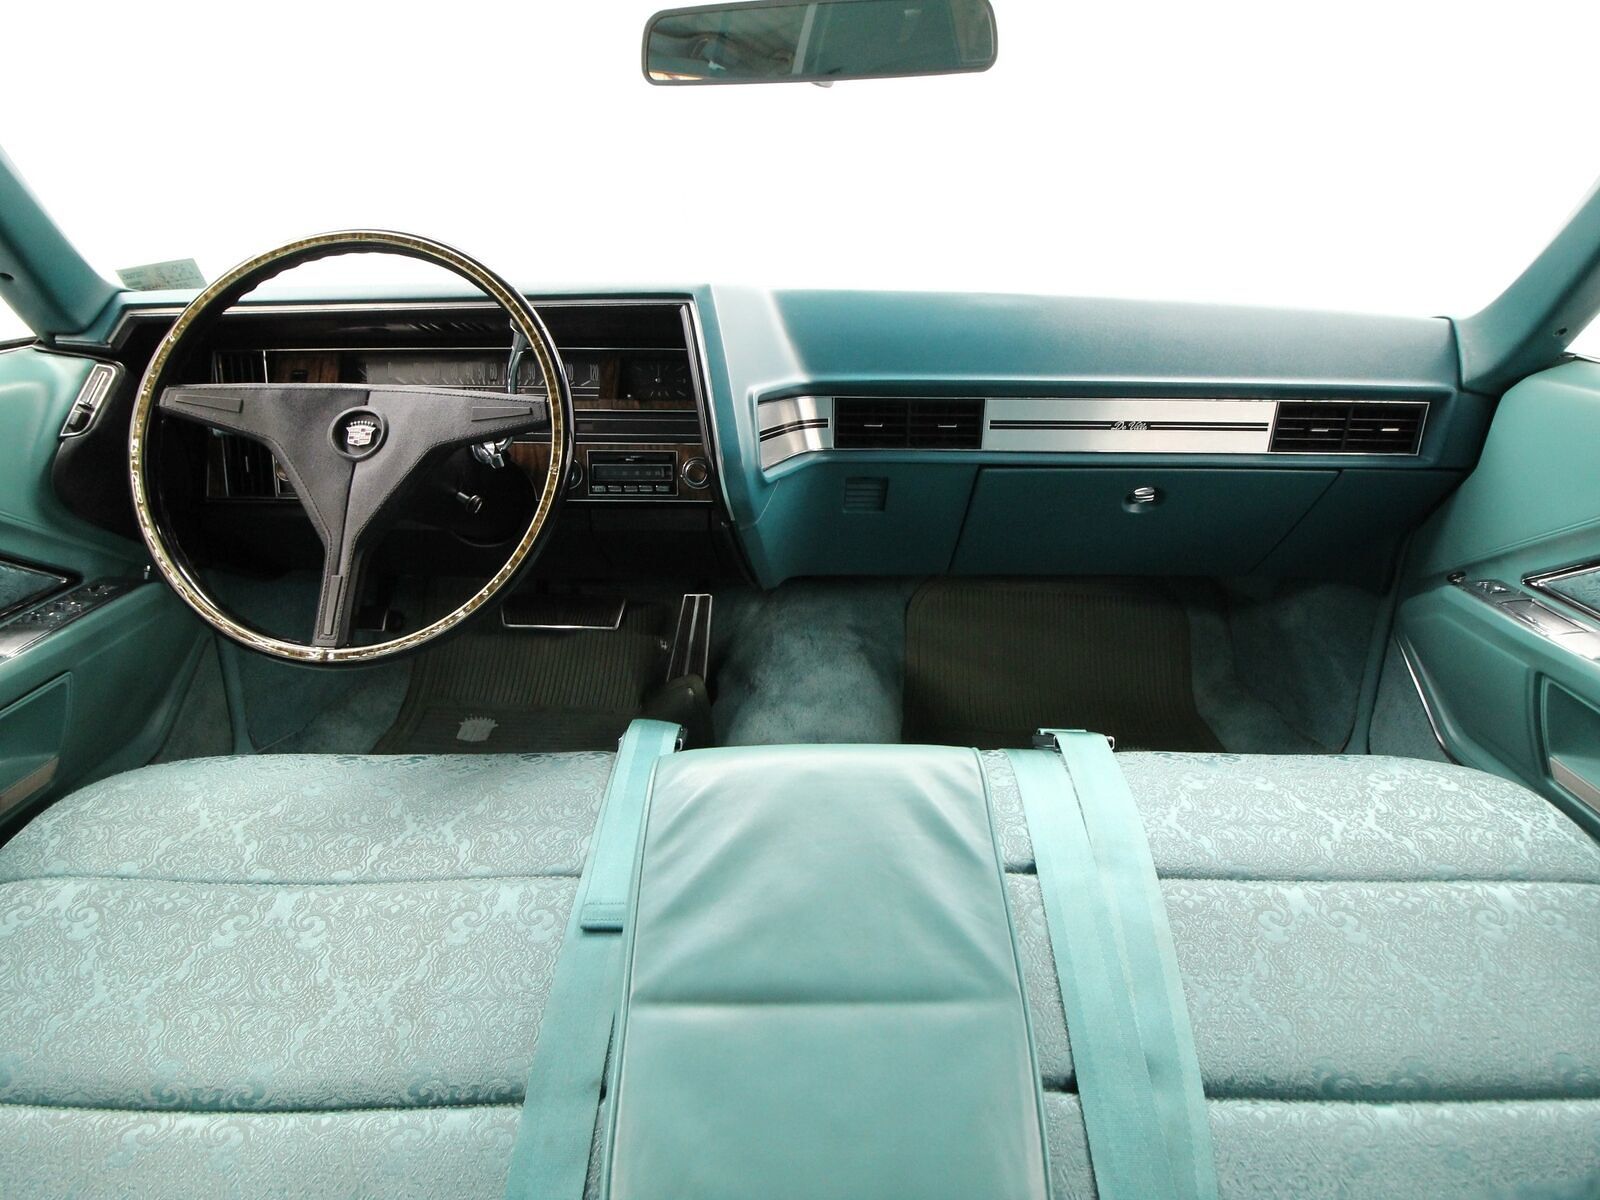 1970 Cadillac Coupe deVille Interior